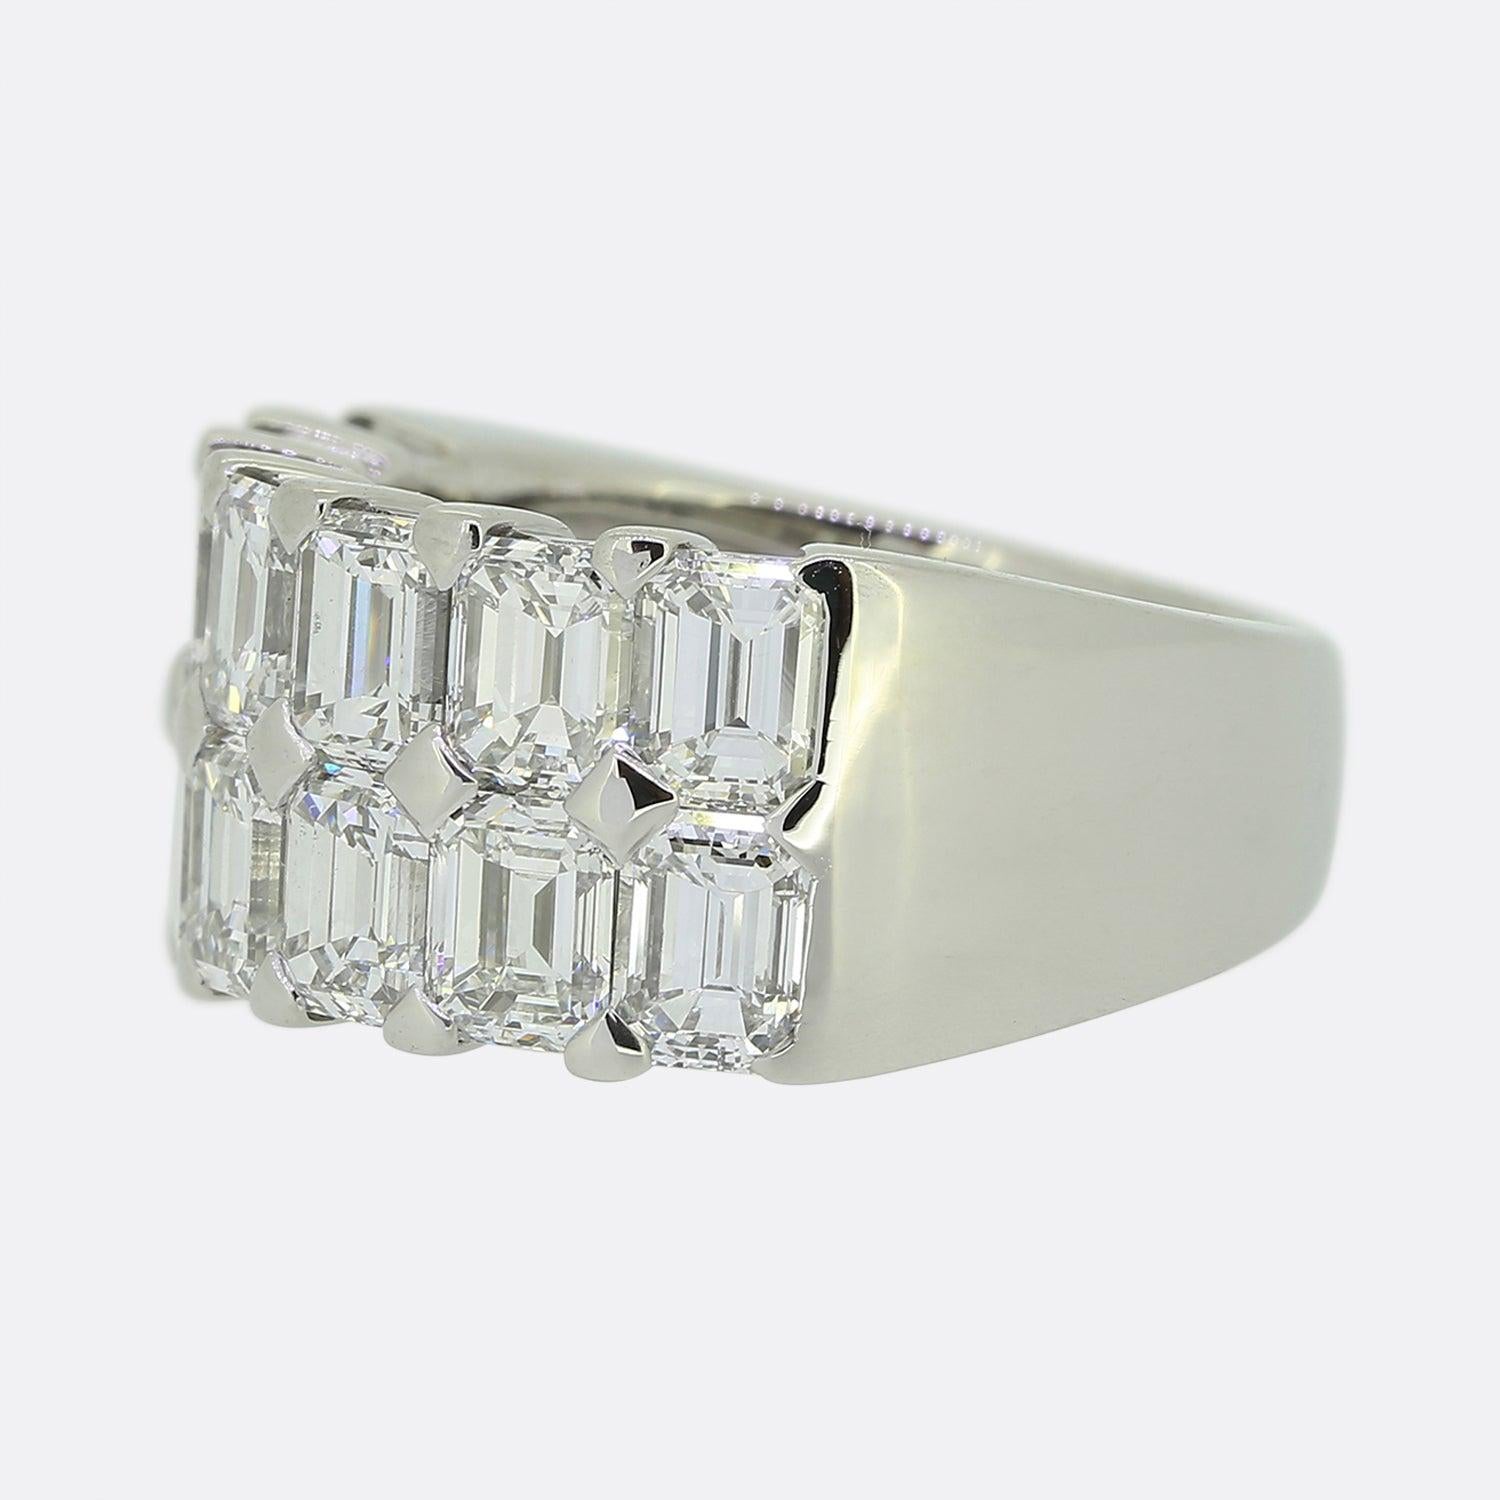 Hier haben wir einen wirklich atemberaubenden Ring des Luxusschmuckdesigners Boodles. Der Ring besteht aus beeindruckenden 5,19 Karat perfekt aufeinander abgestimmter Diamanten im Smaragdschliff. Die Diamanten verteilen sich auf zwei Reihen und sind